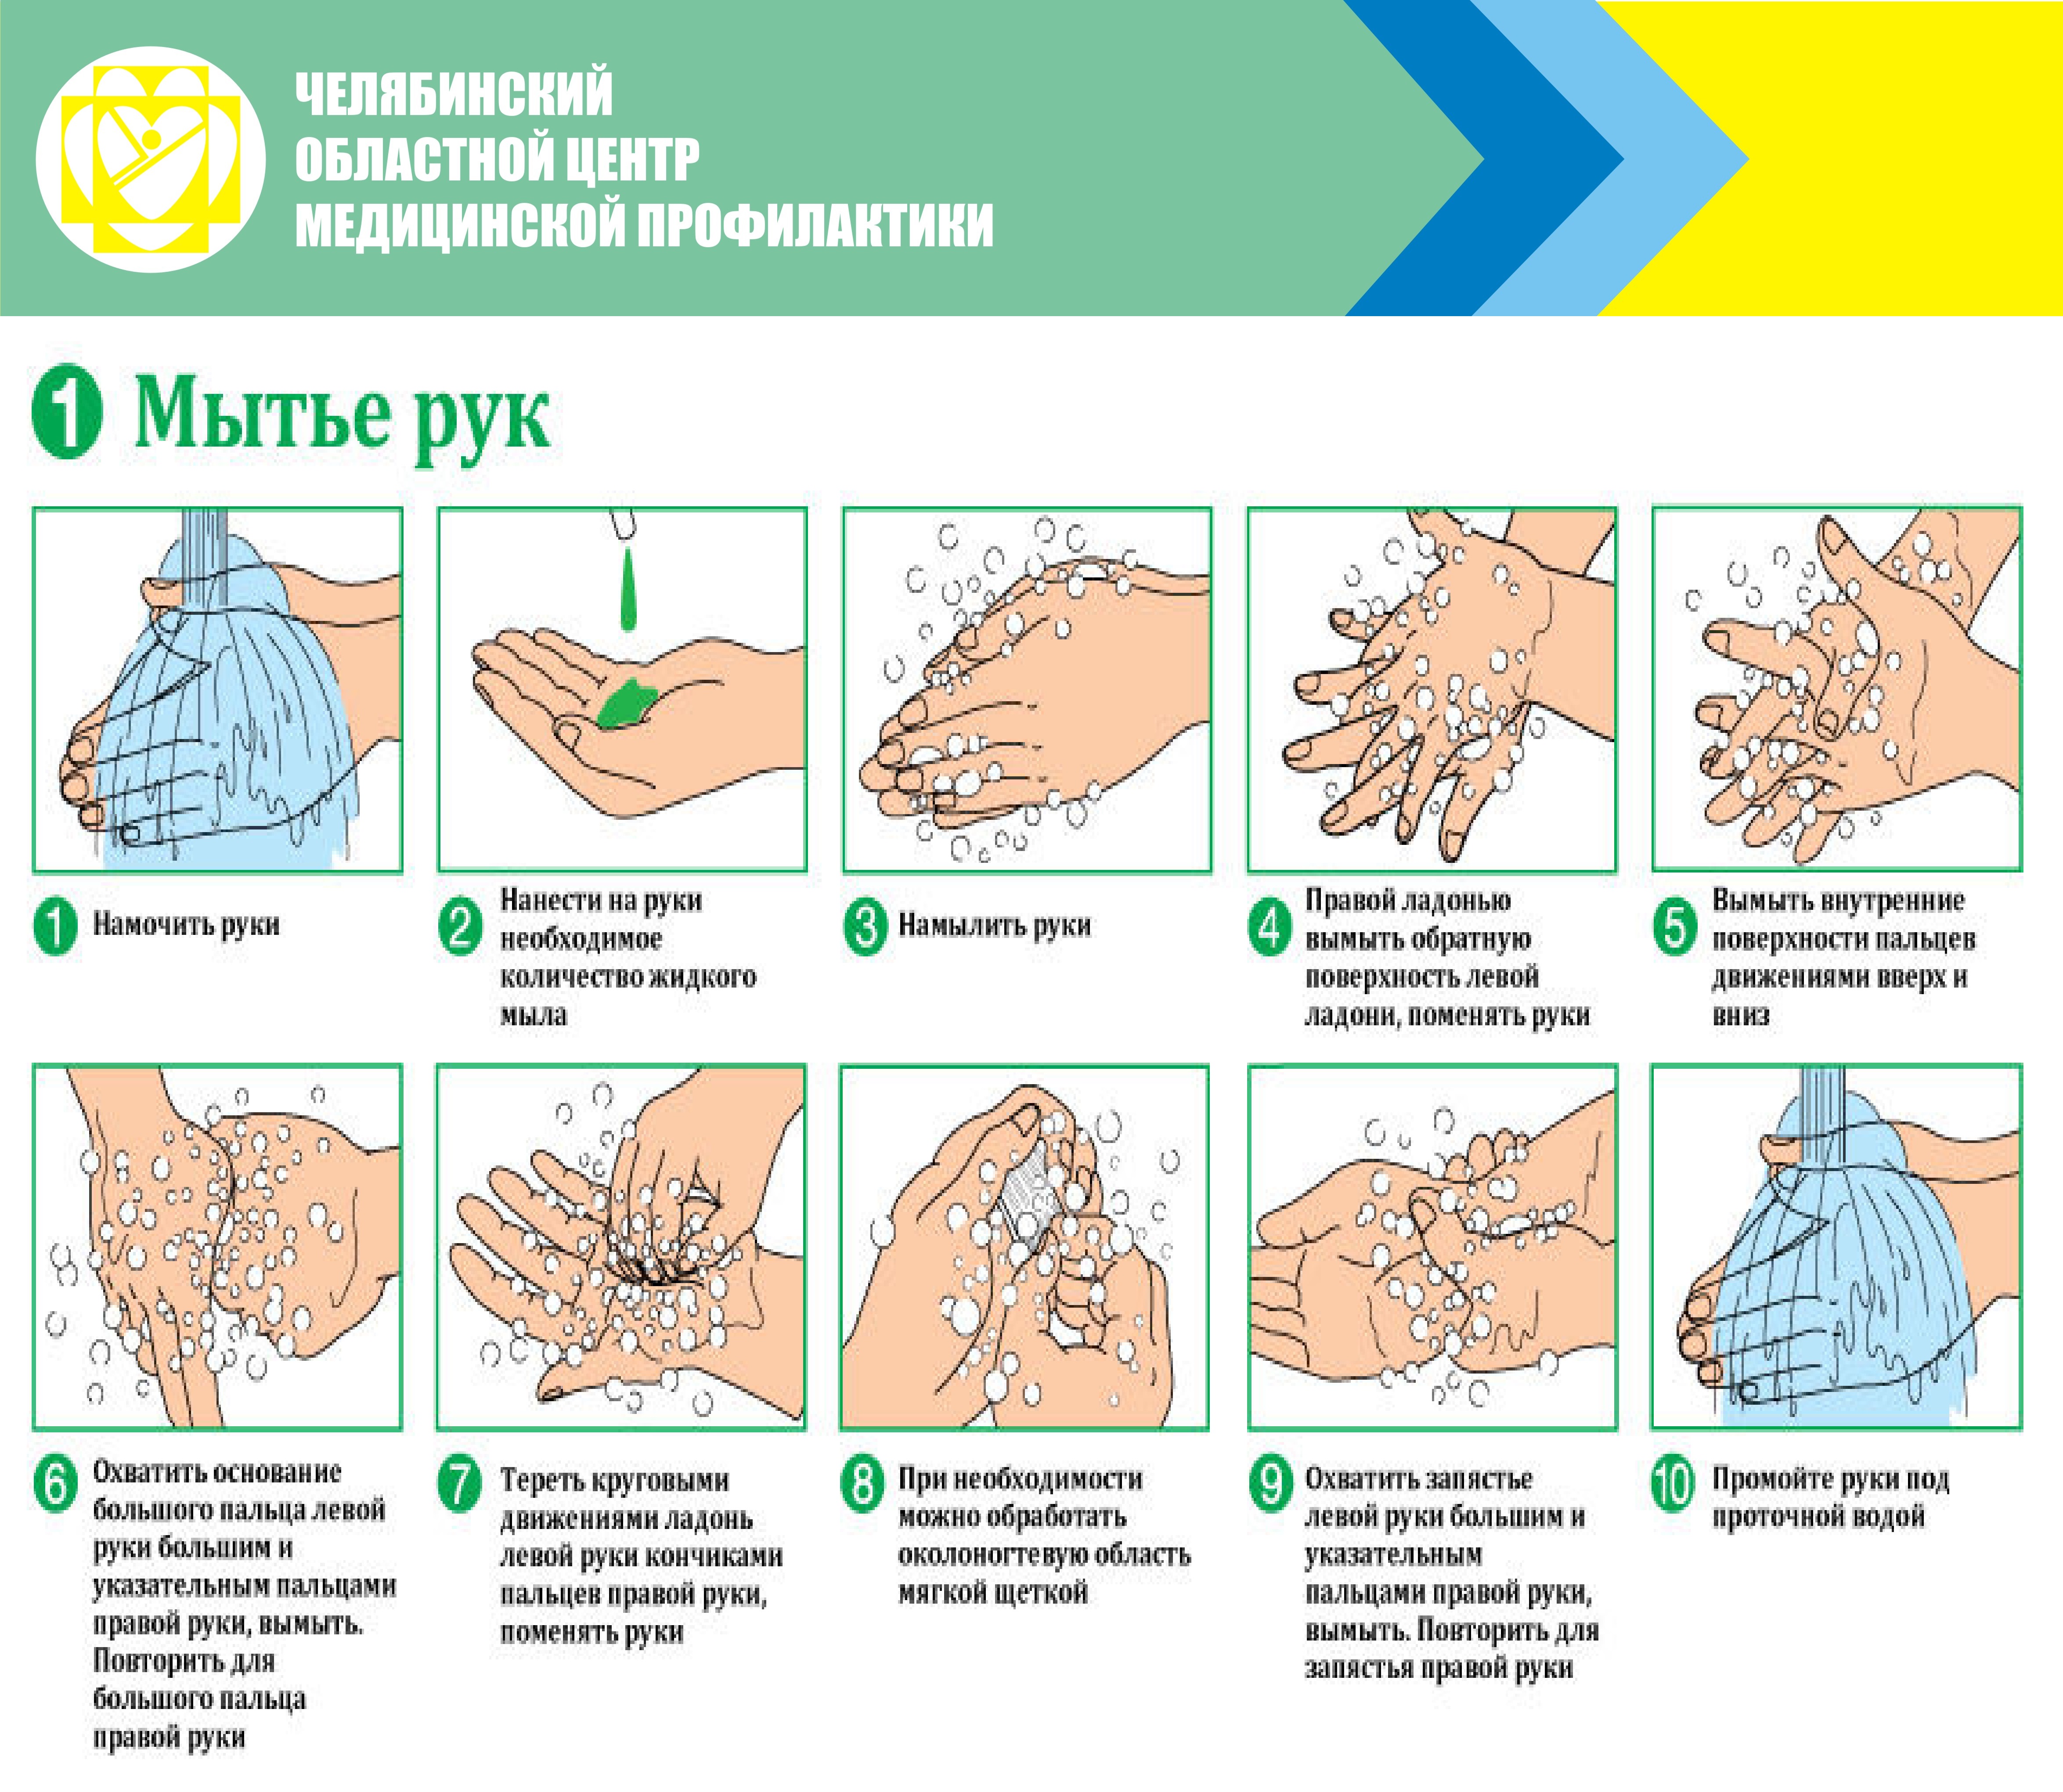 Приказ мытья рук. Алгоритм гигиенической обработки рук мытье. Гигиеническая обработка рук мытье рук с использованием. Правила гигиенического мытья рук. Инструкция мытья рук.